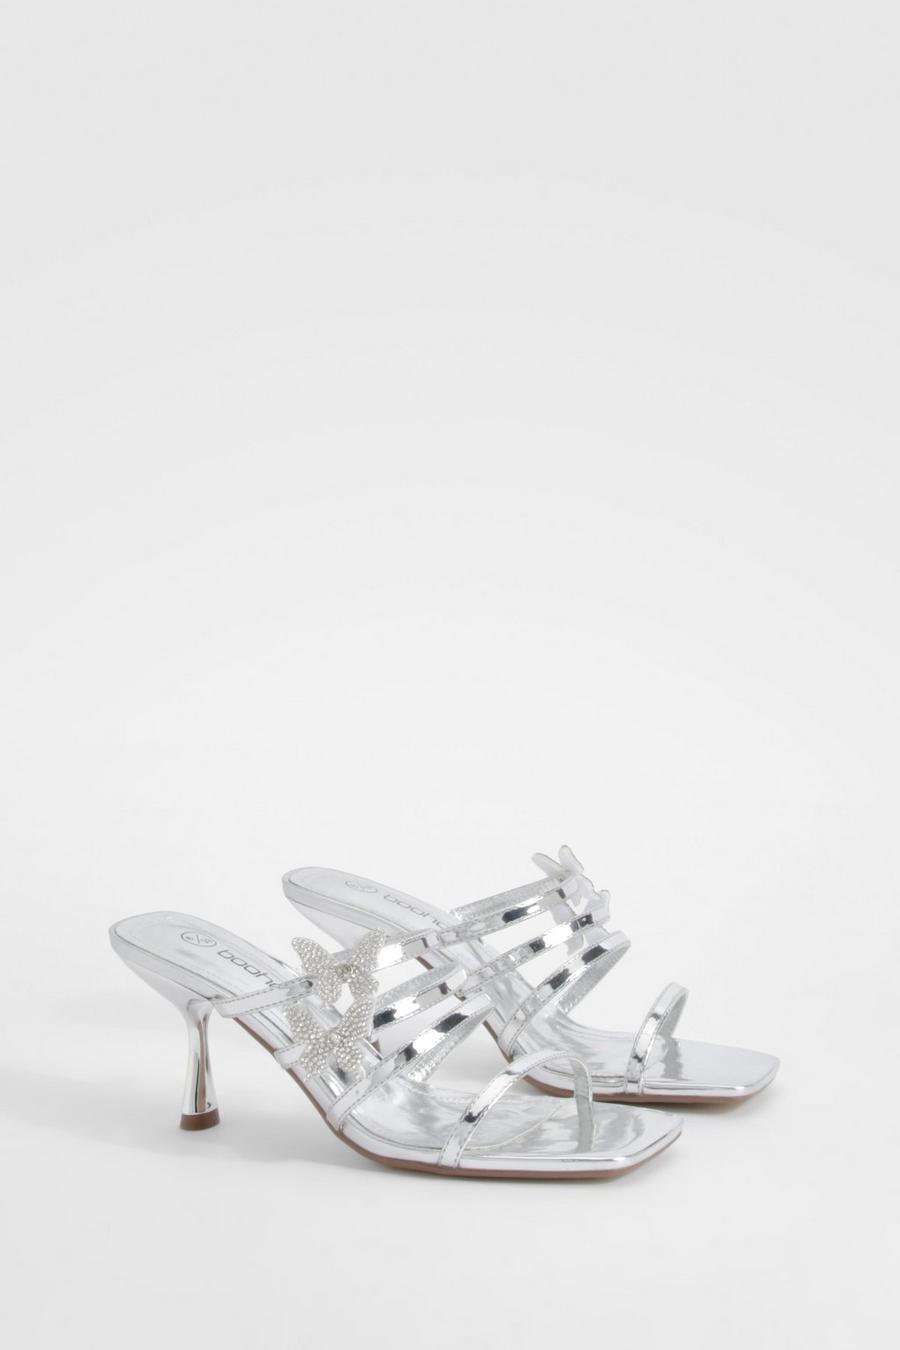 Sandali Mules con fascette, farfalle e tacco, Silver